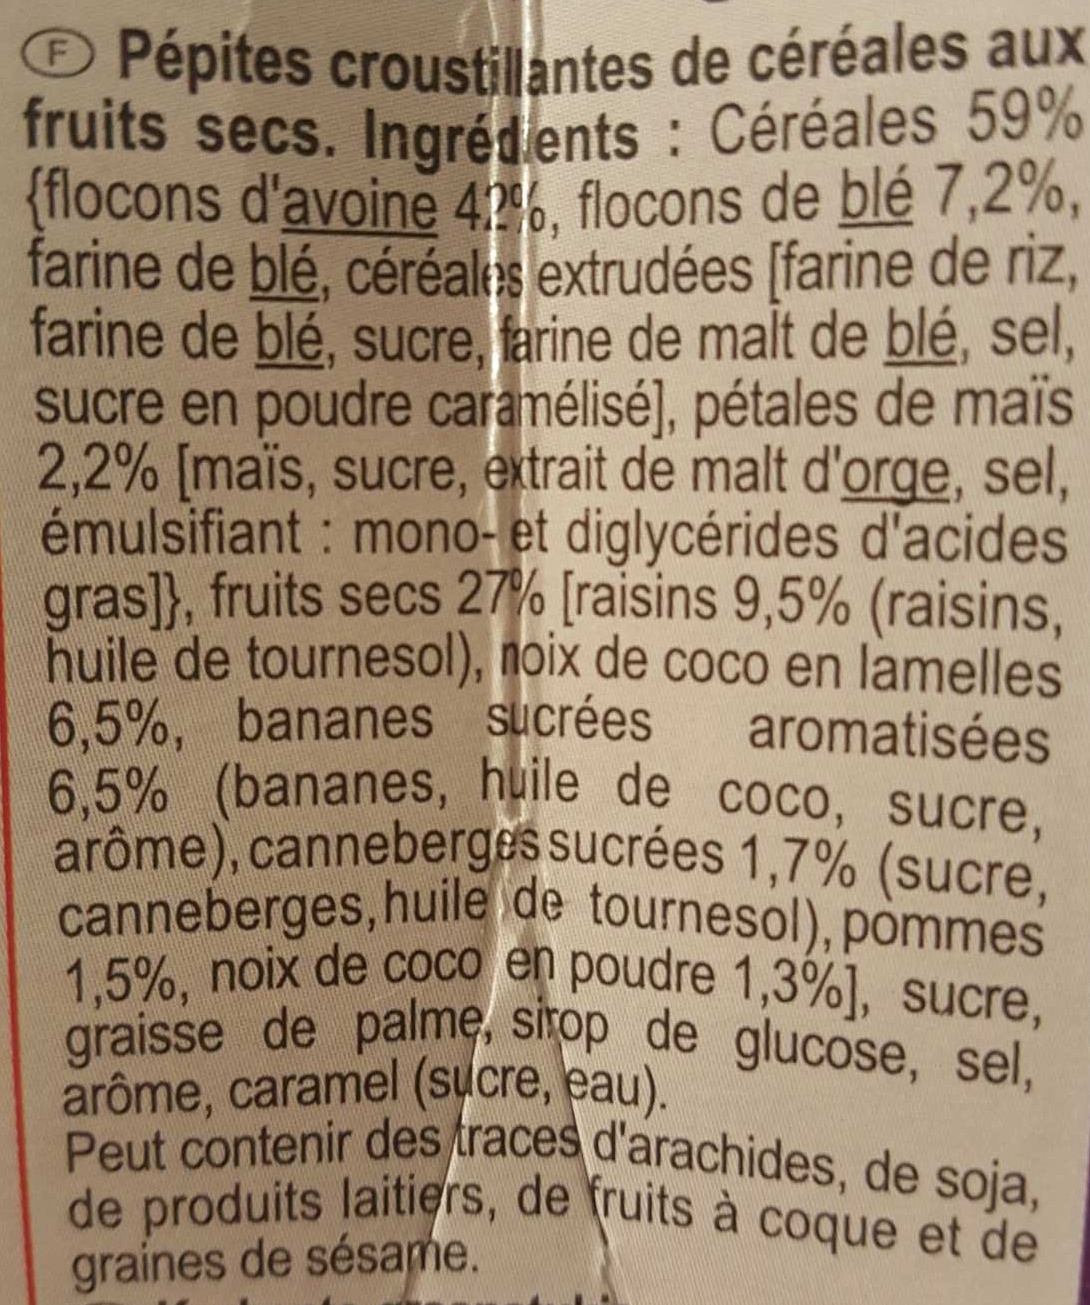 Crunchy muesli - Pépites croustillantes de céréales aux 5 fruits secs - Ingrédients